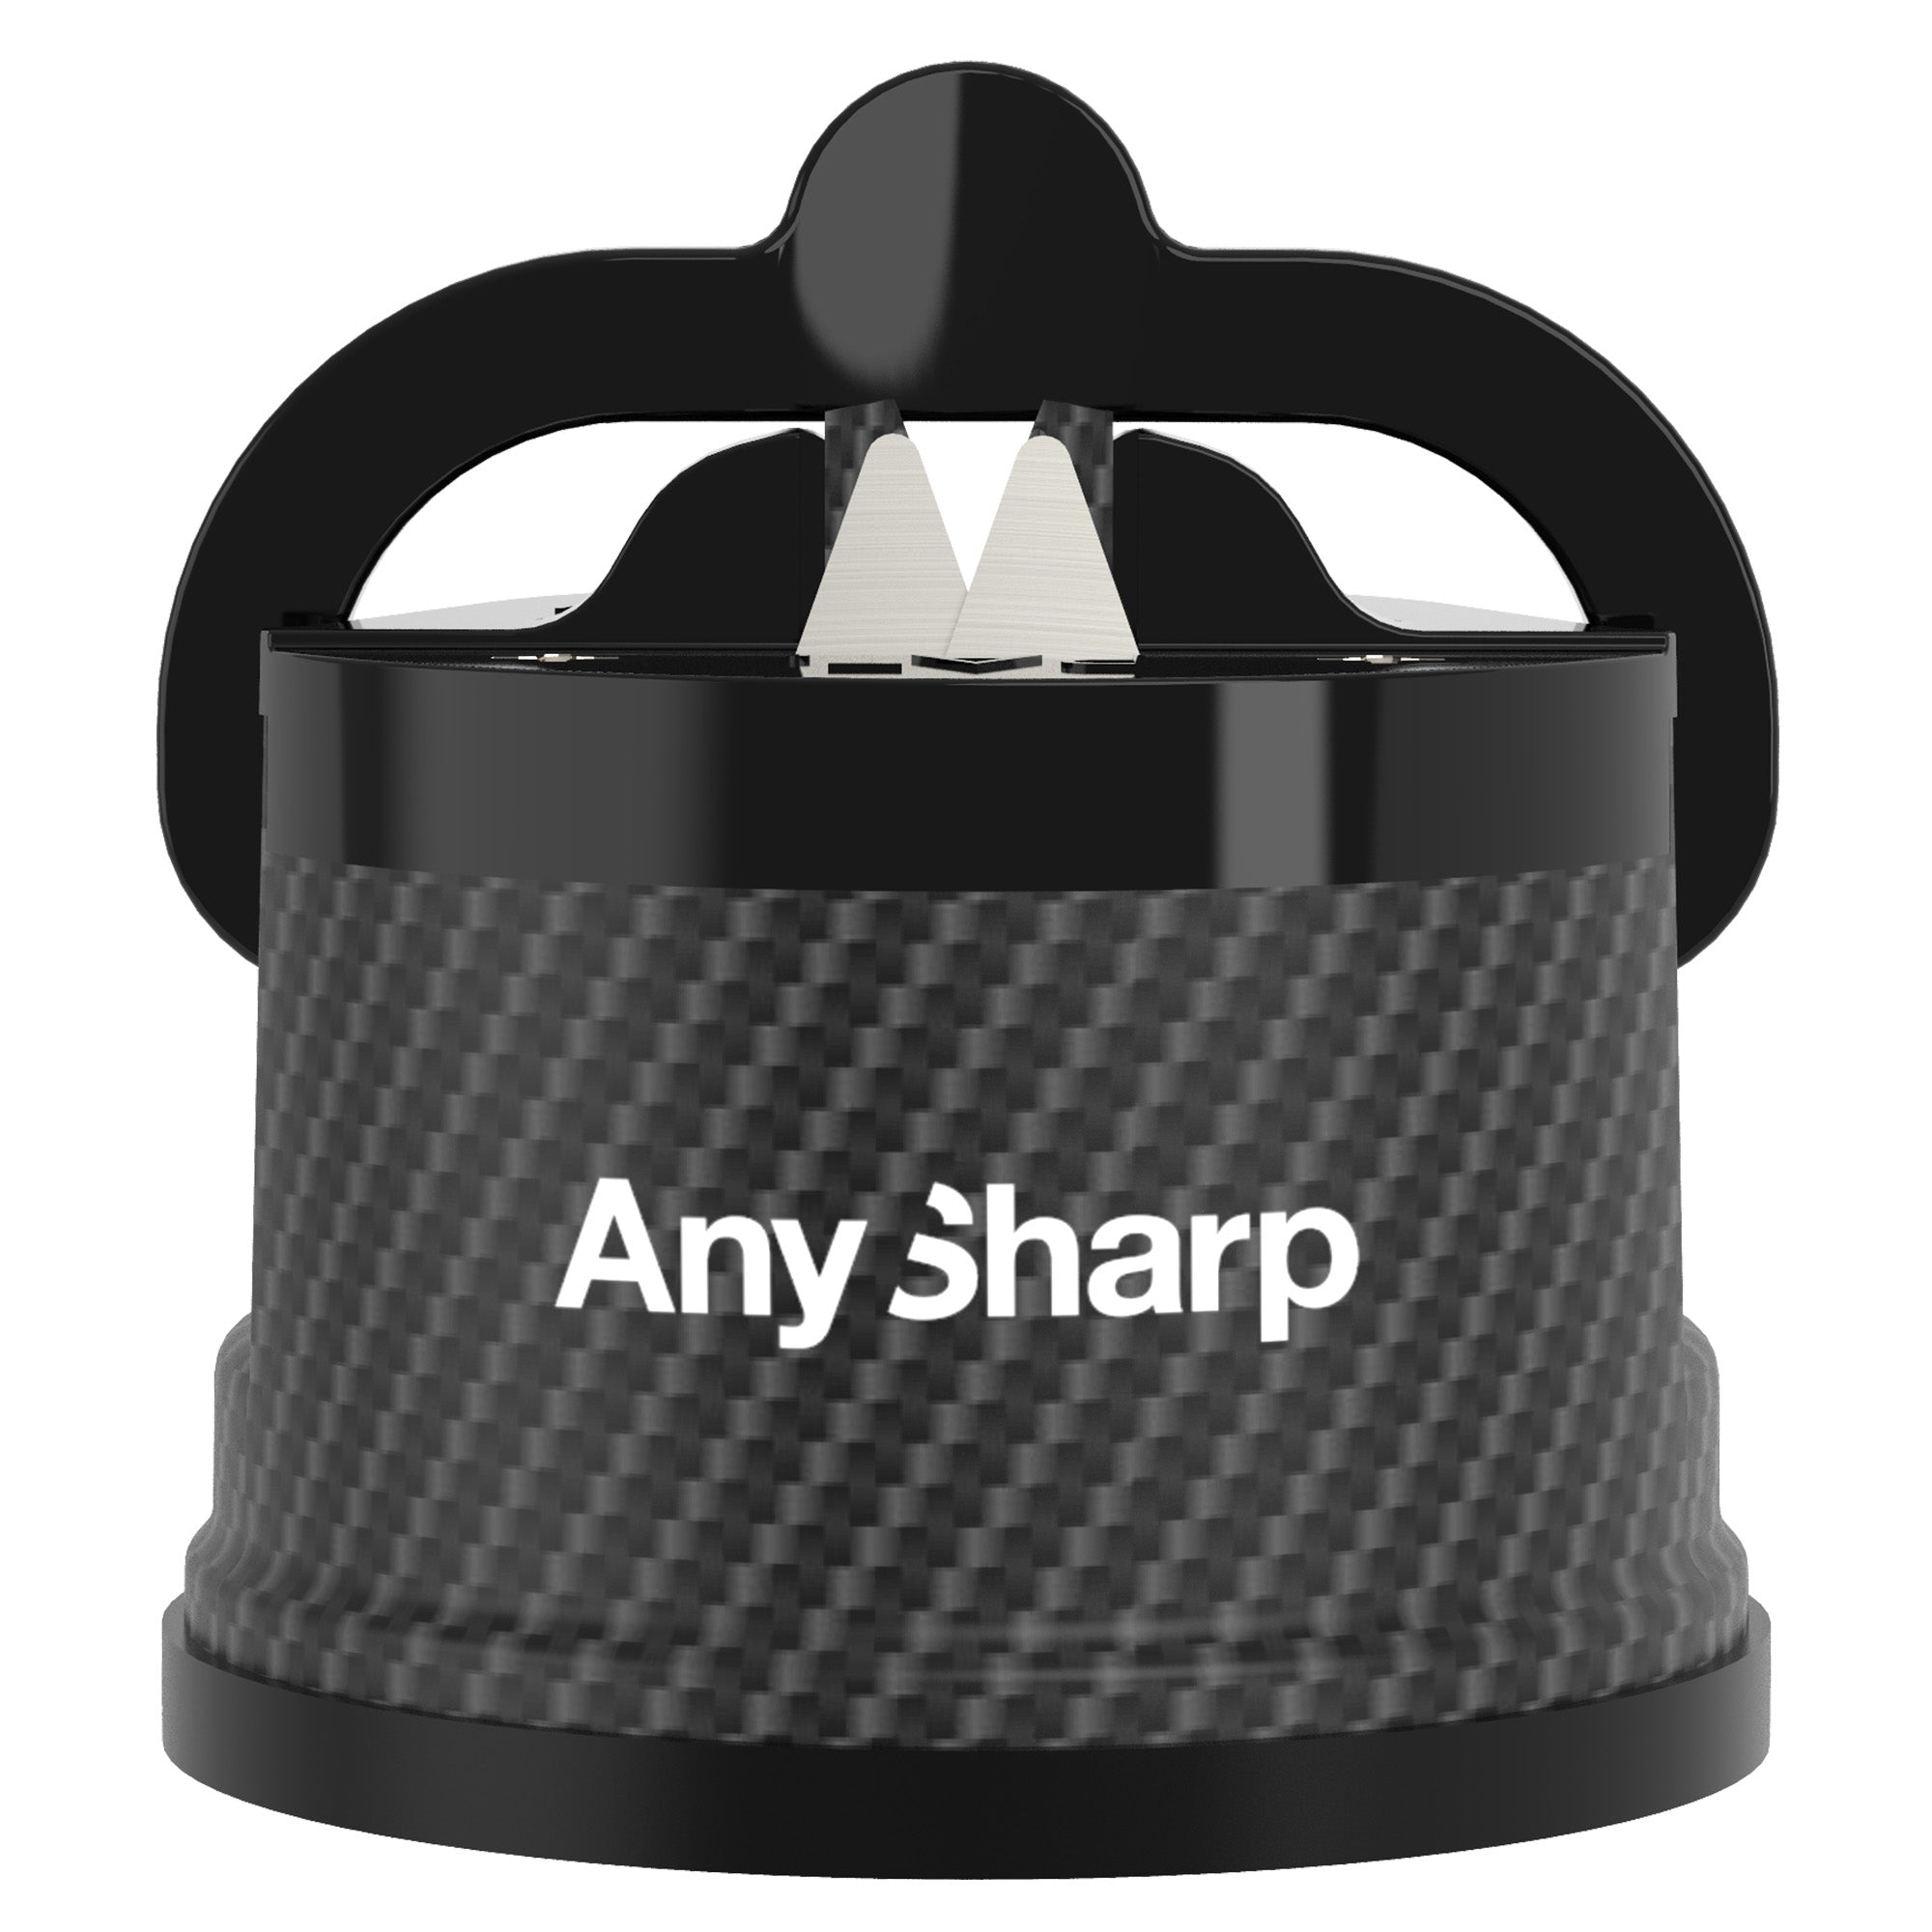 AnySharp Pro Chef Metal Knife Sharpener, Brass